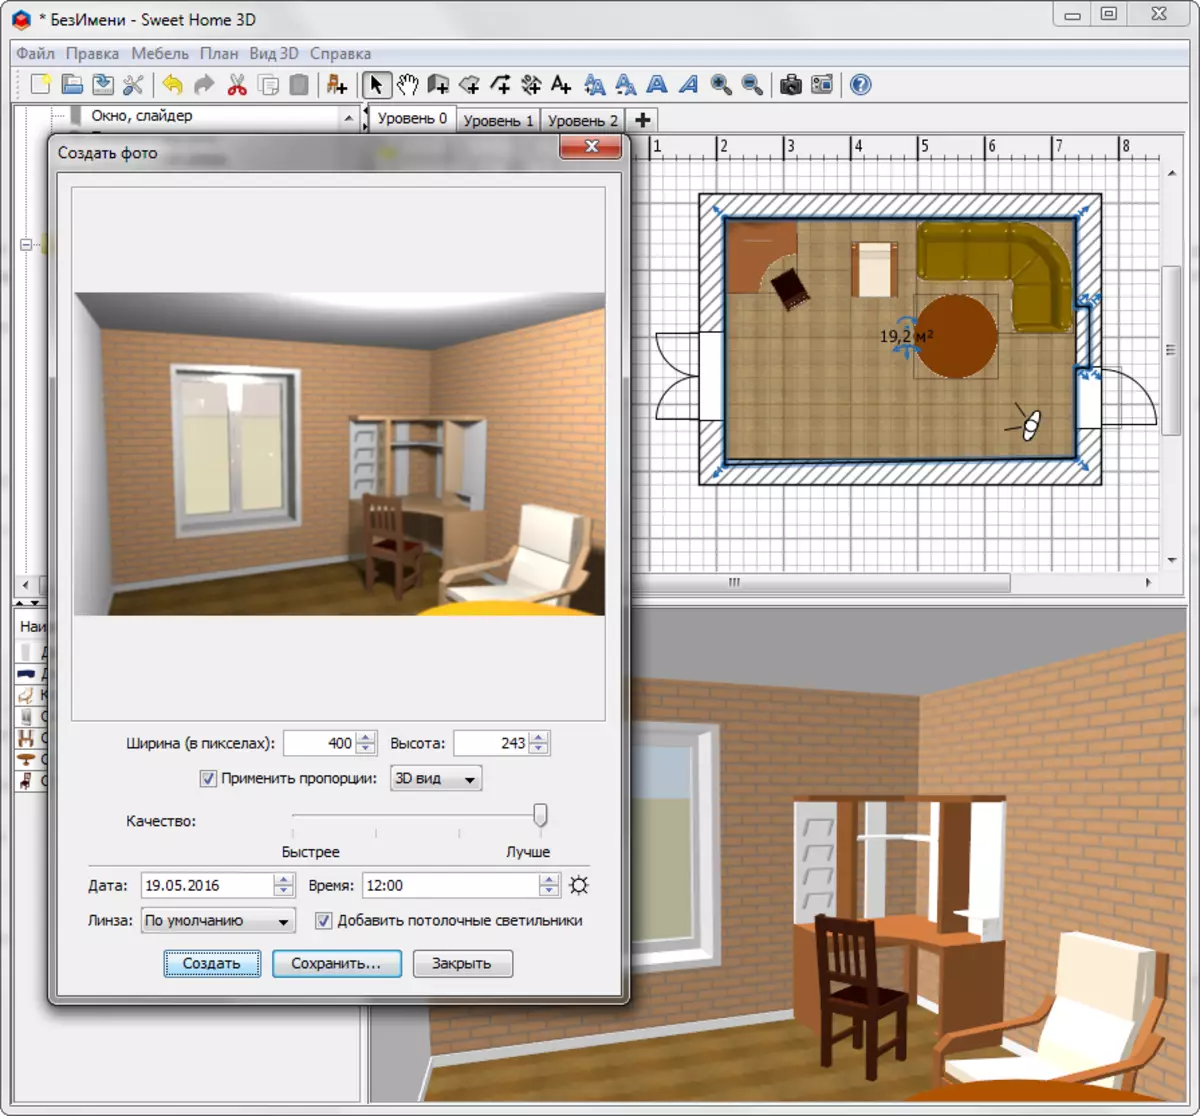 vizualizacija soba u Sweet Home 3D